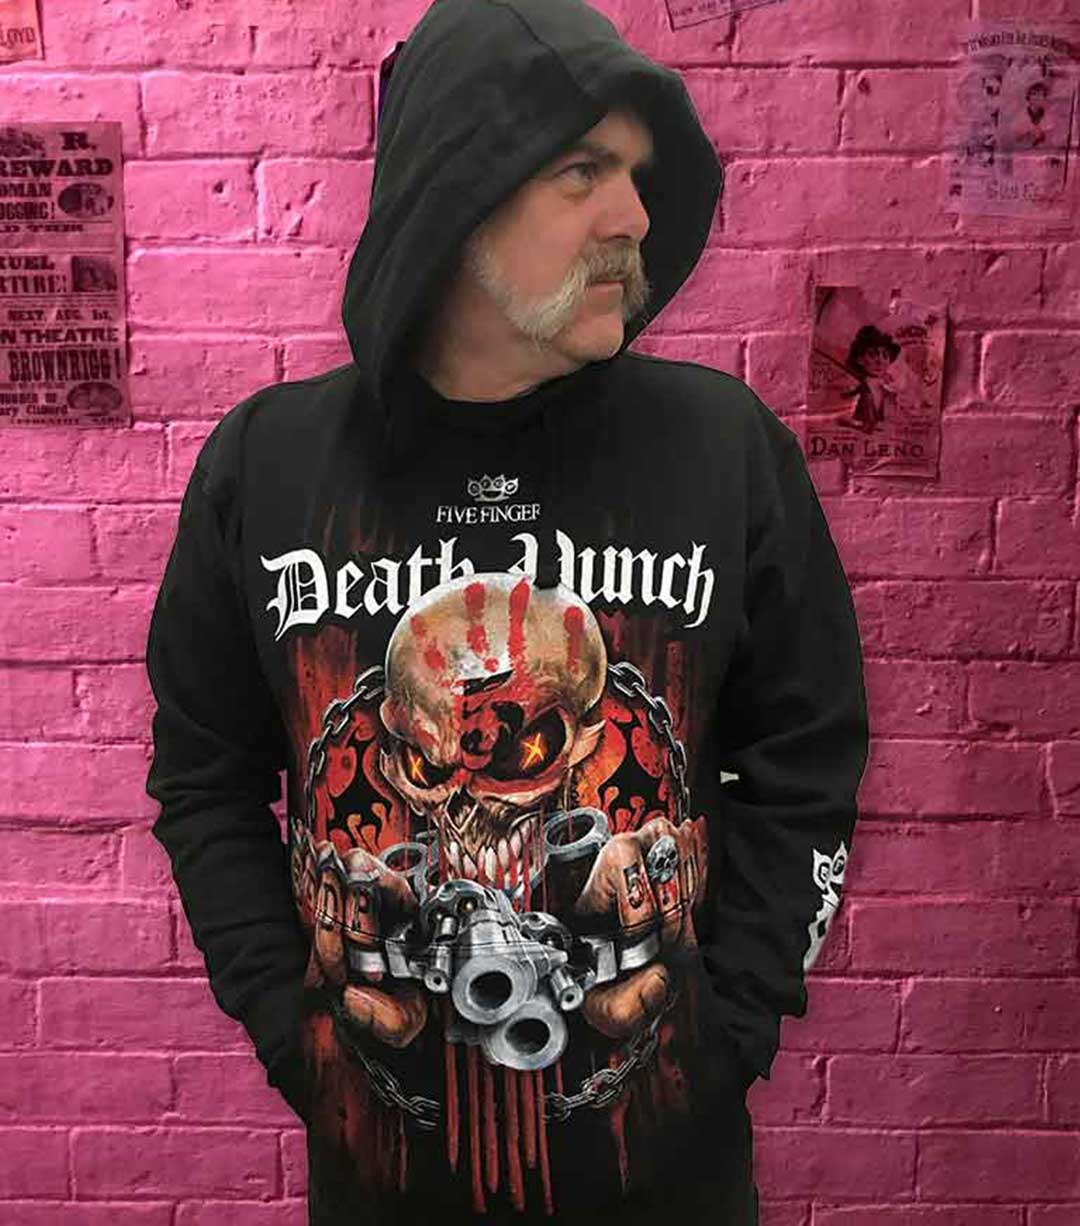 Gordon in the very metal Death Punch hoodie